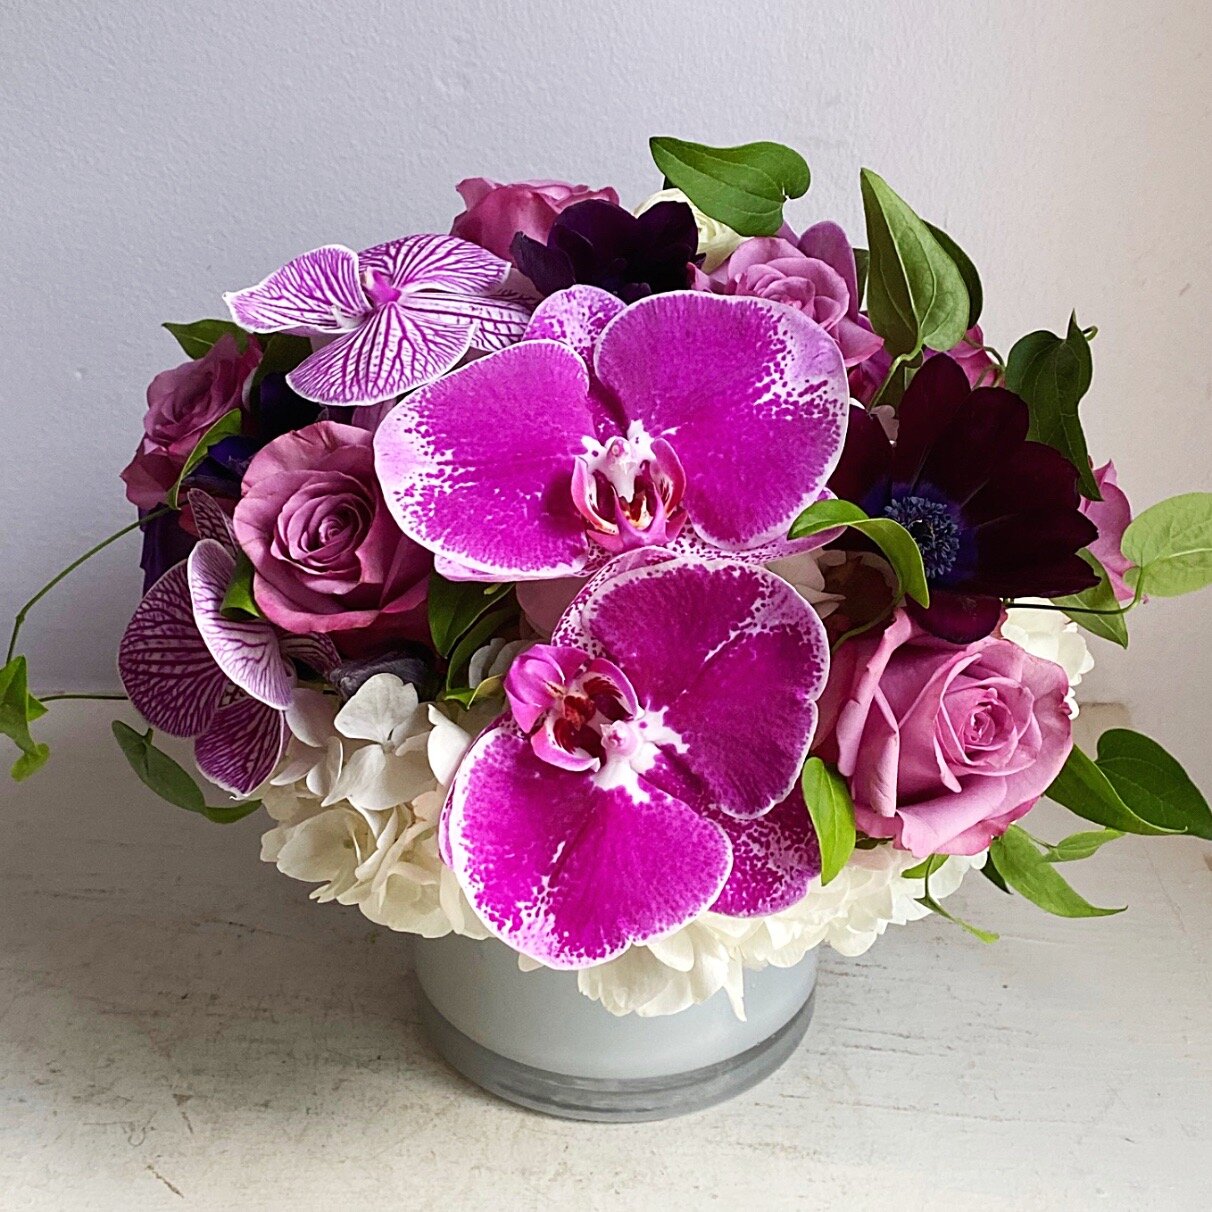 Orchid flower arrangements - Atelier Ashley Flowers